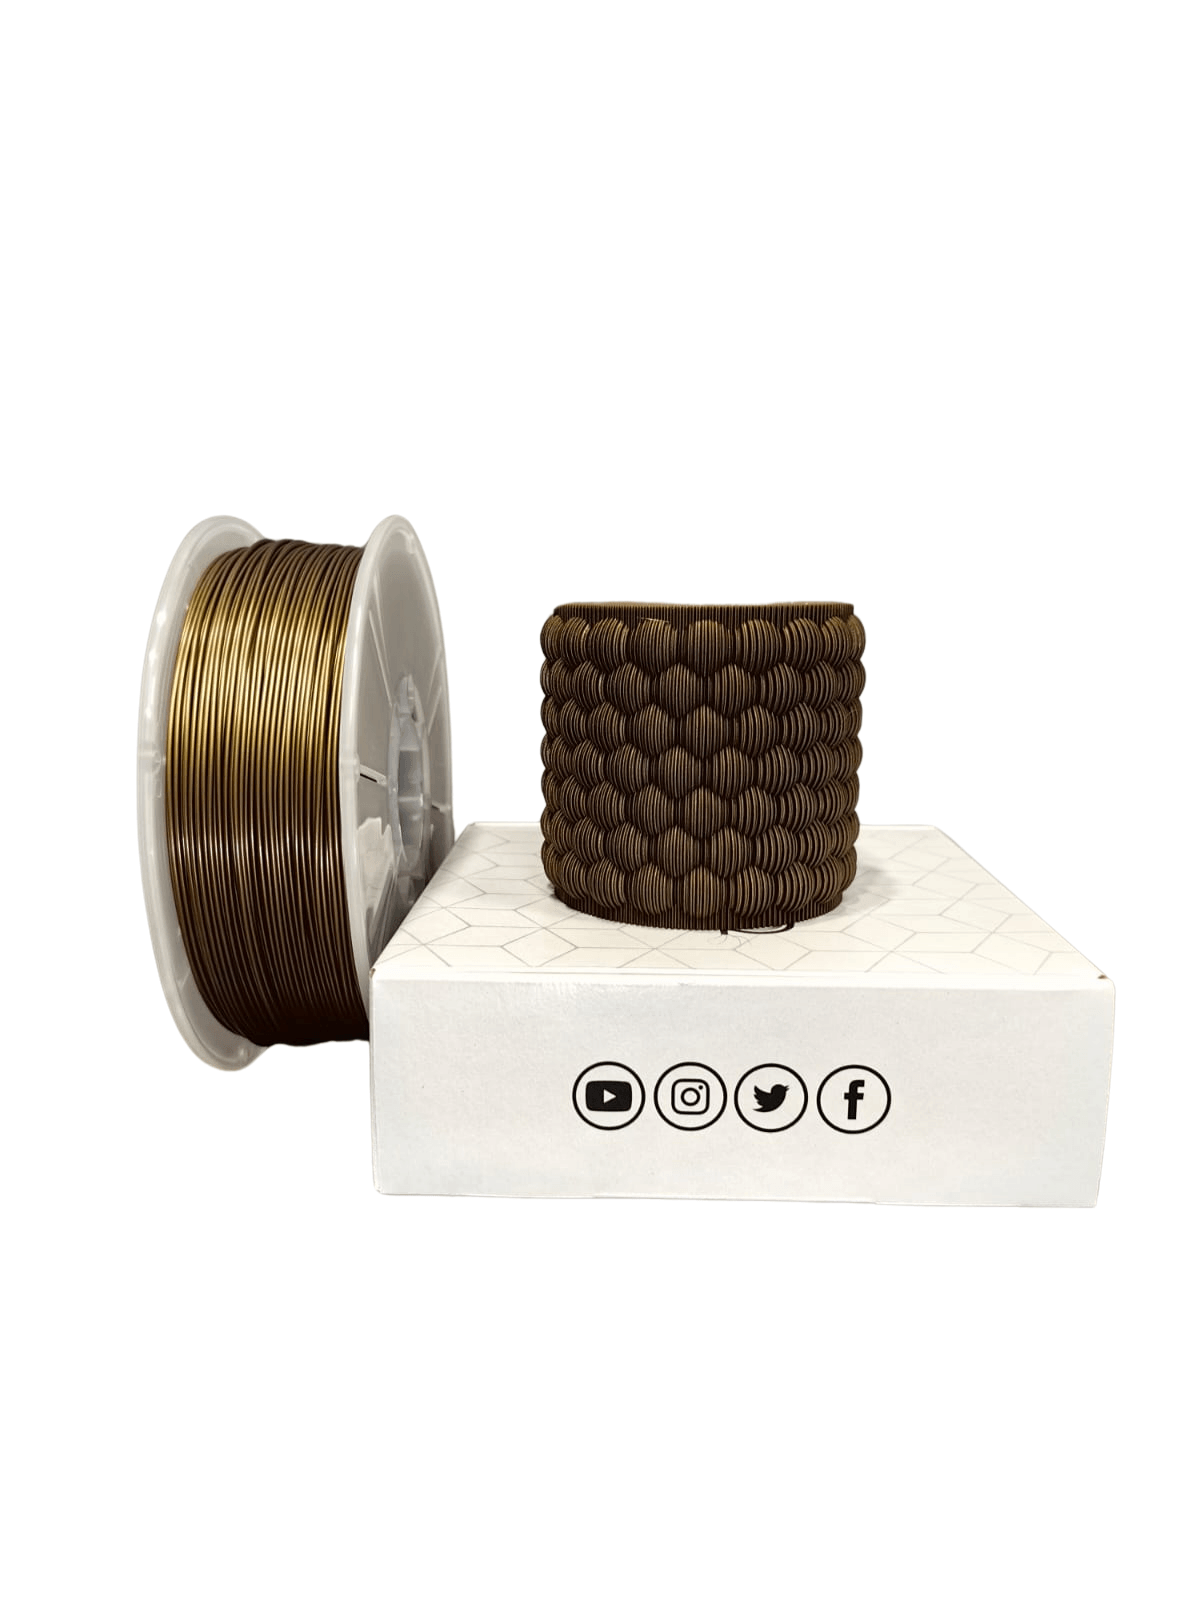 Filetto Pla+ Filament 1.75mm 1KG - Bronze